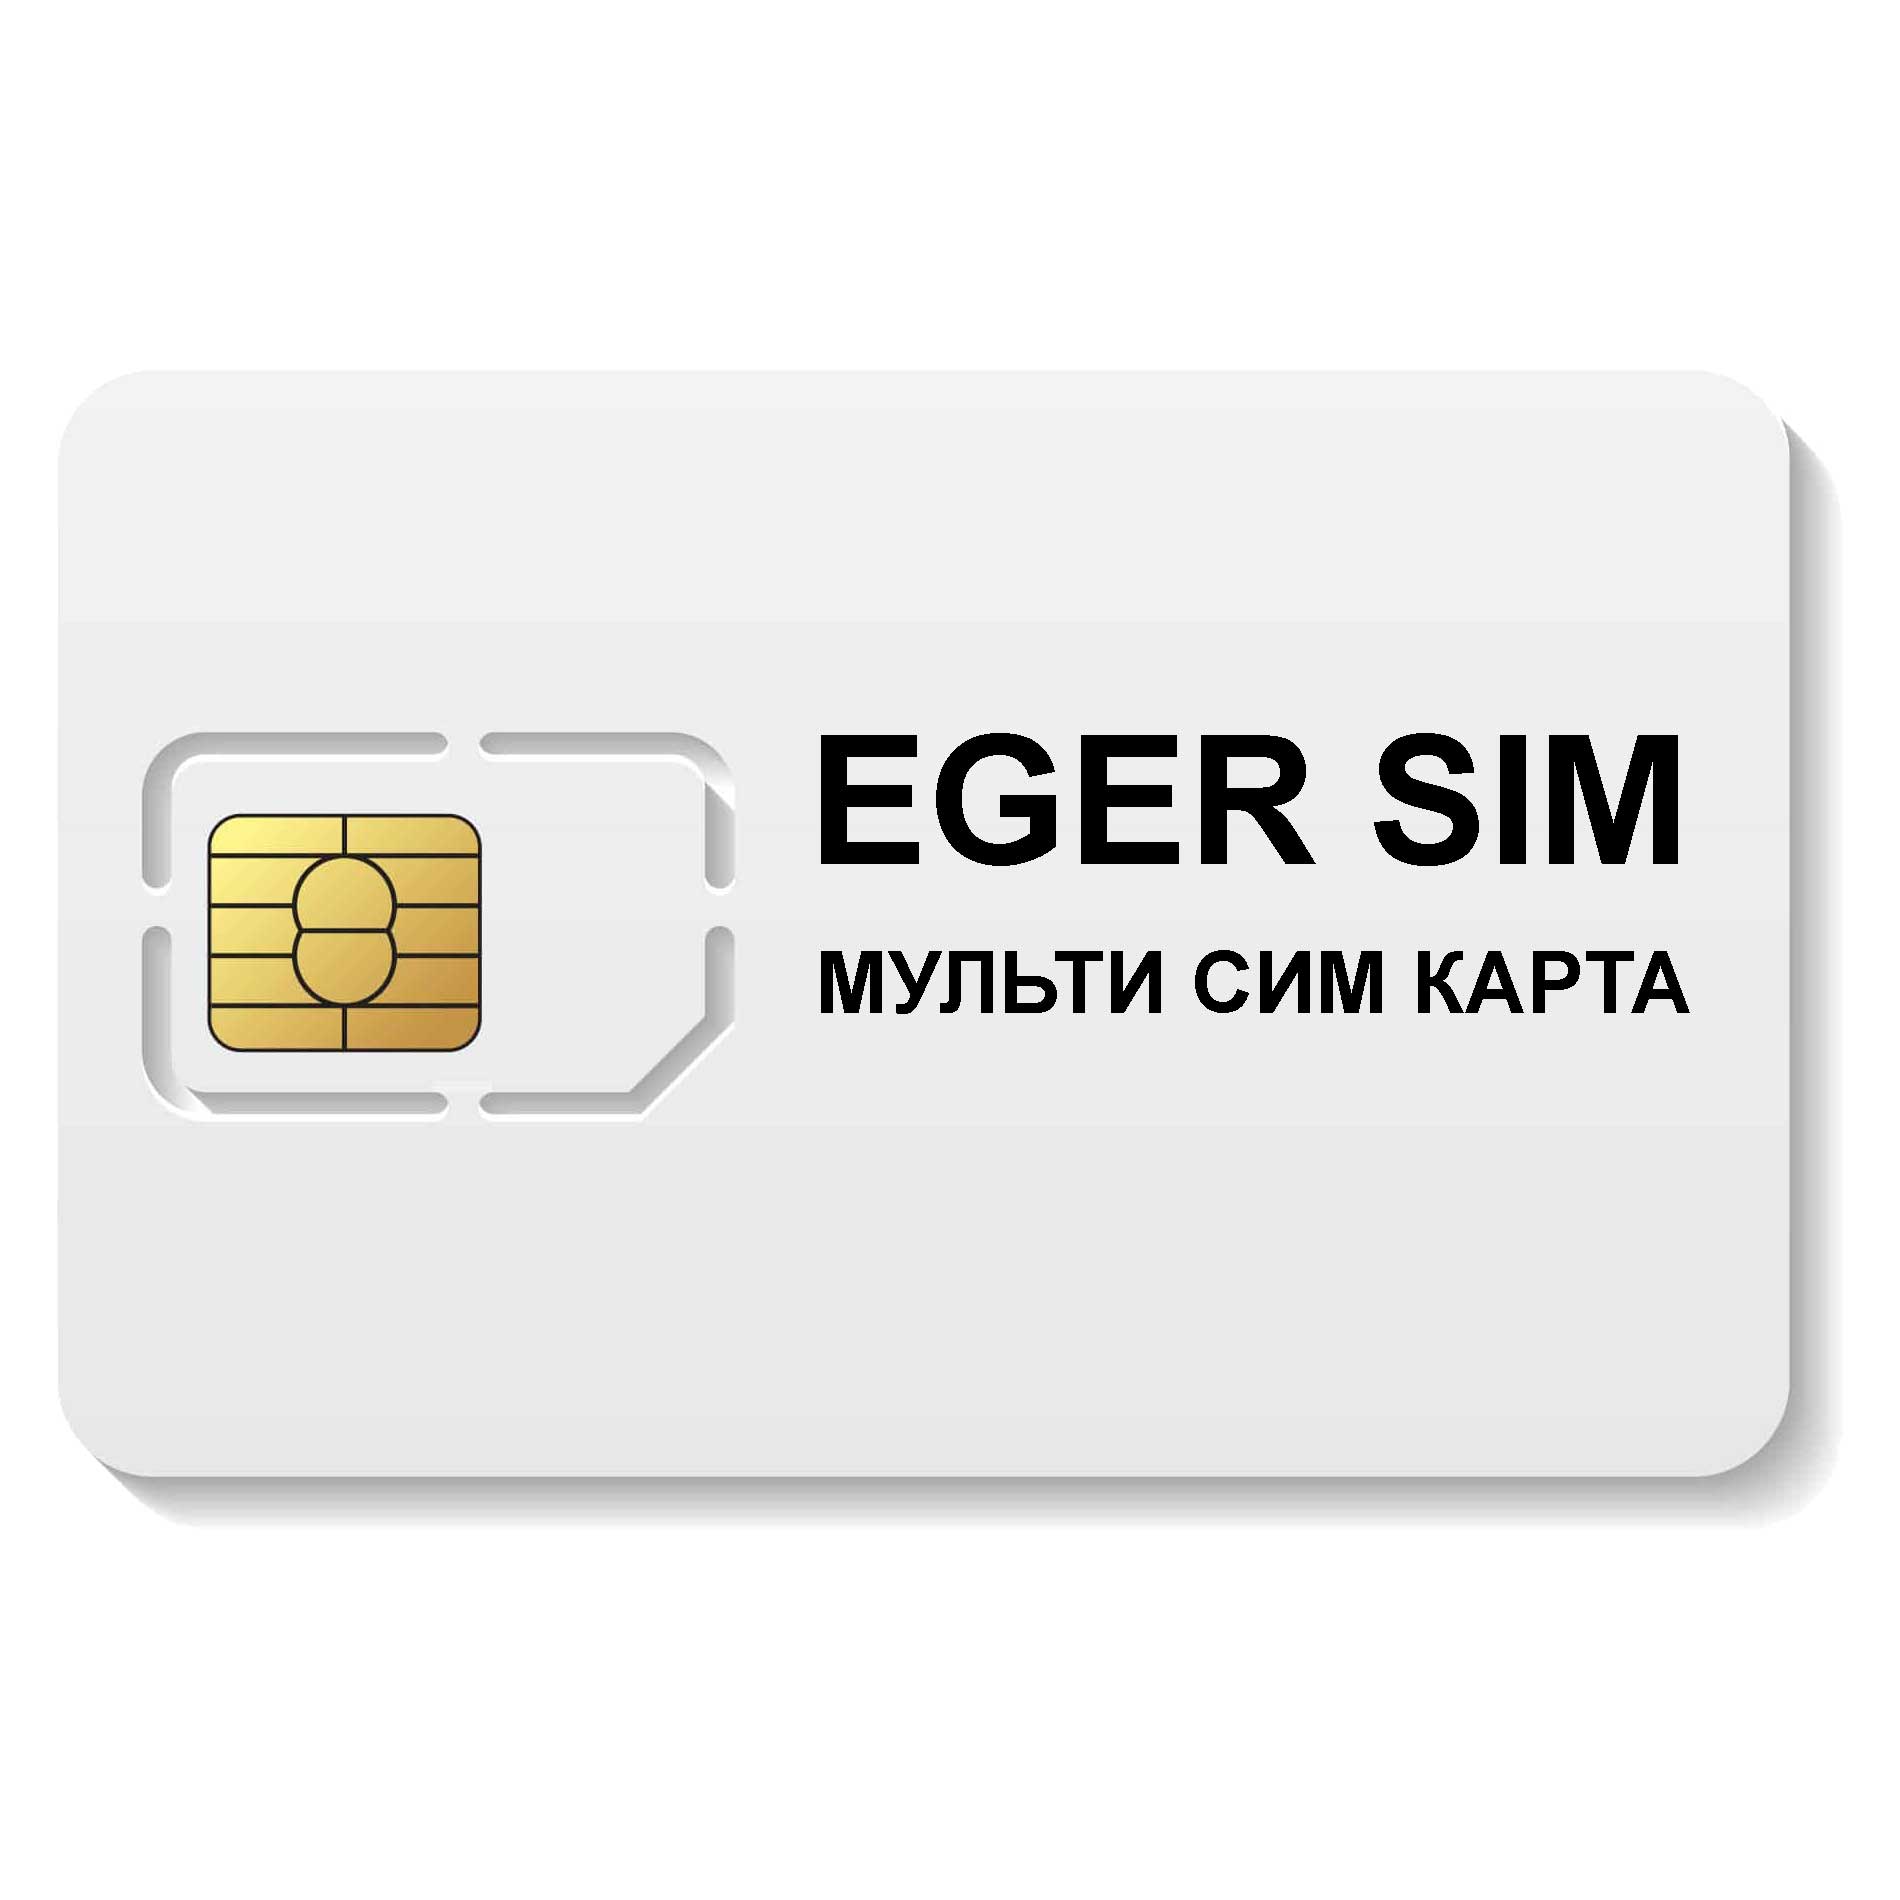 Юридическая сим карта. Сим карта Билайн. Термо SIM-карта. Мультисимкарта. Beeline m2m SIM Card.